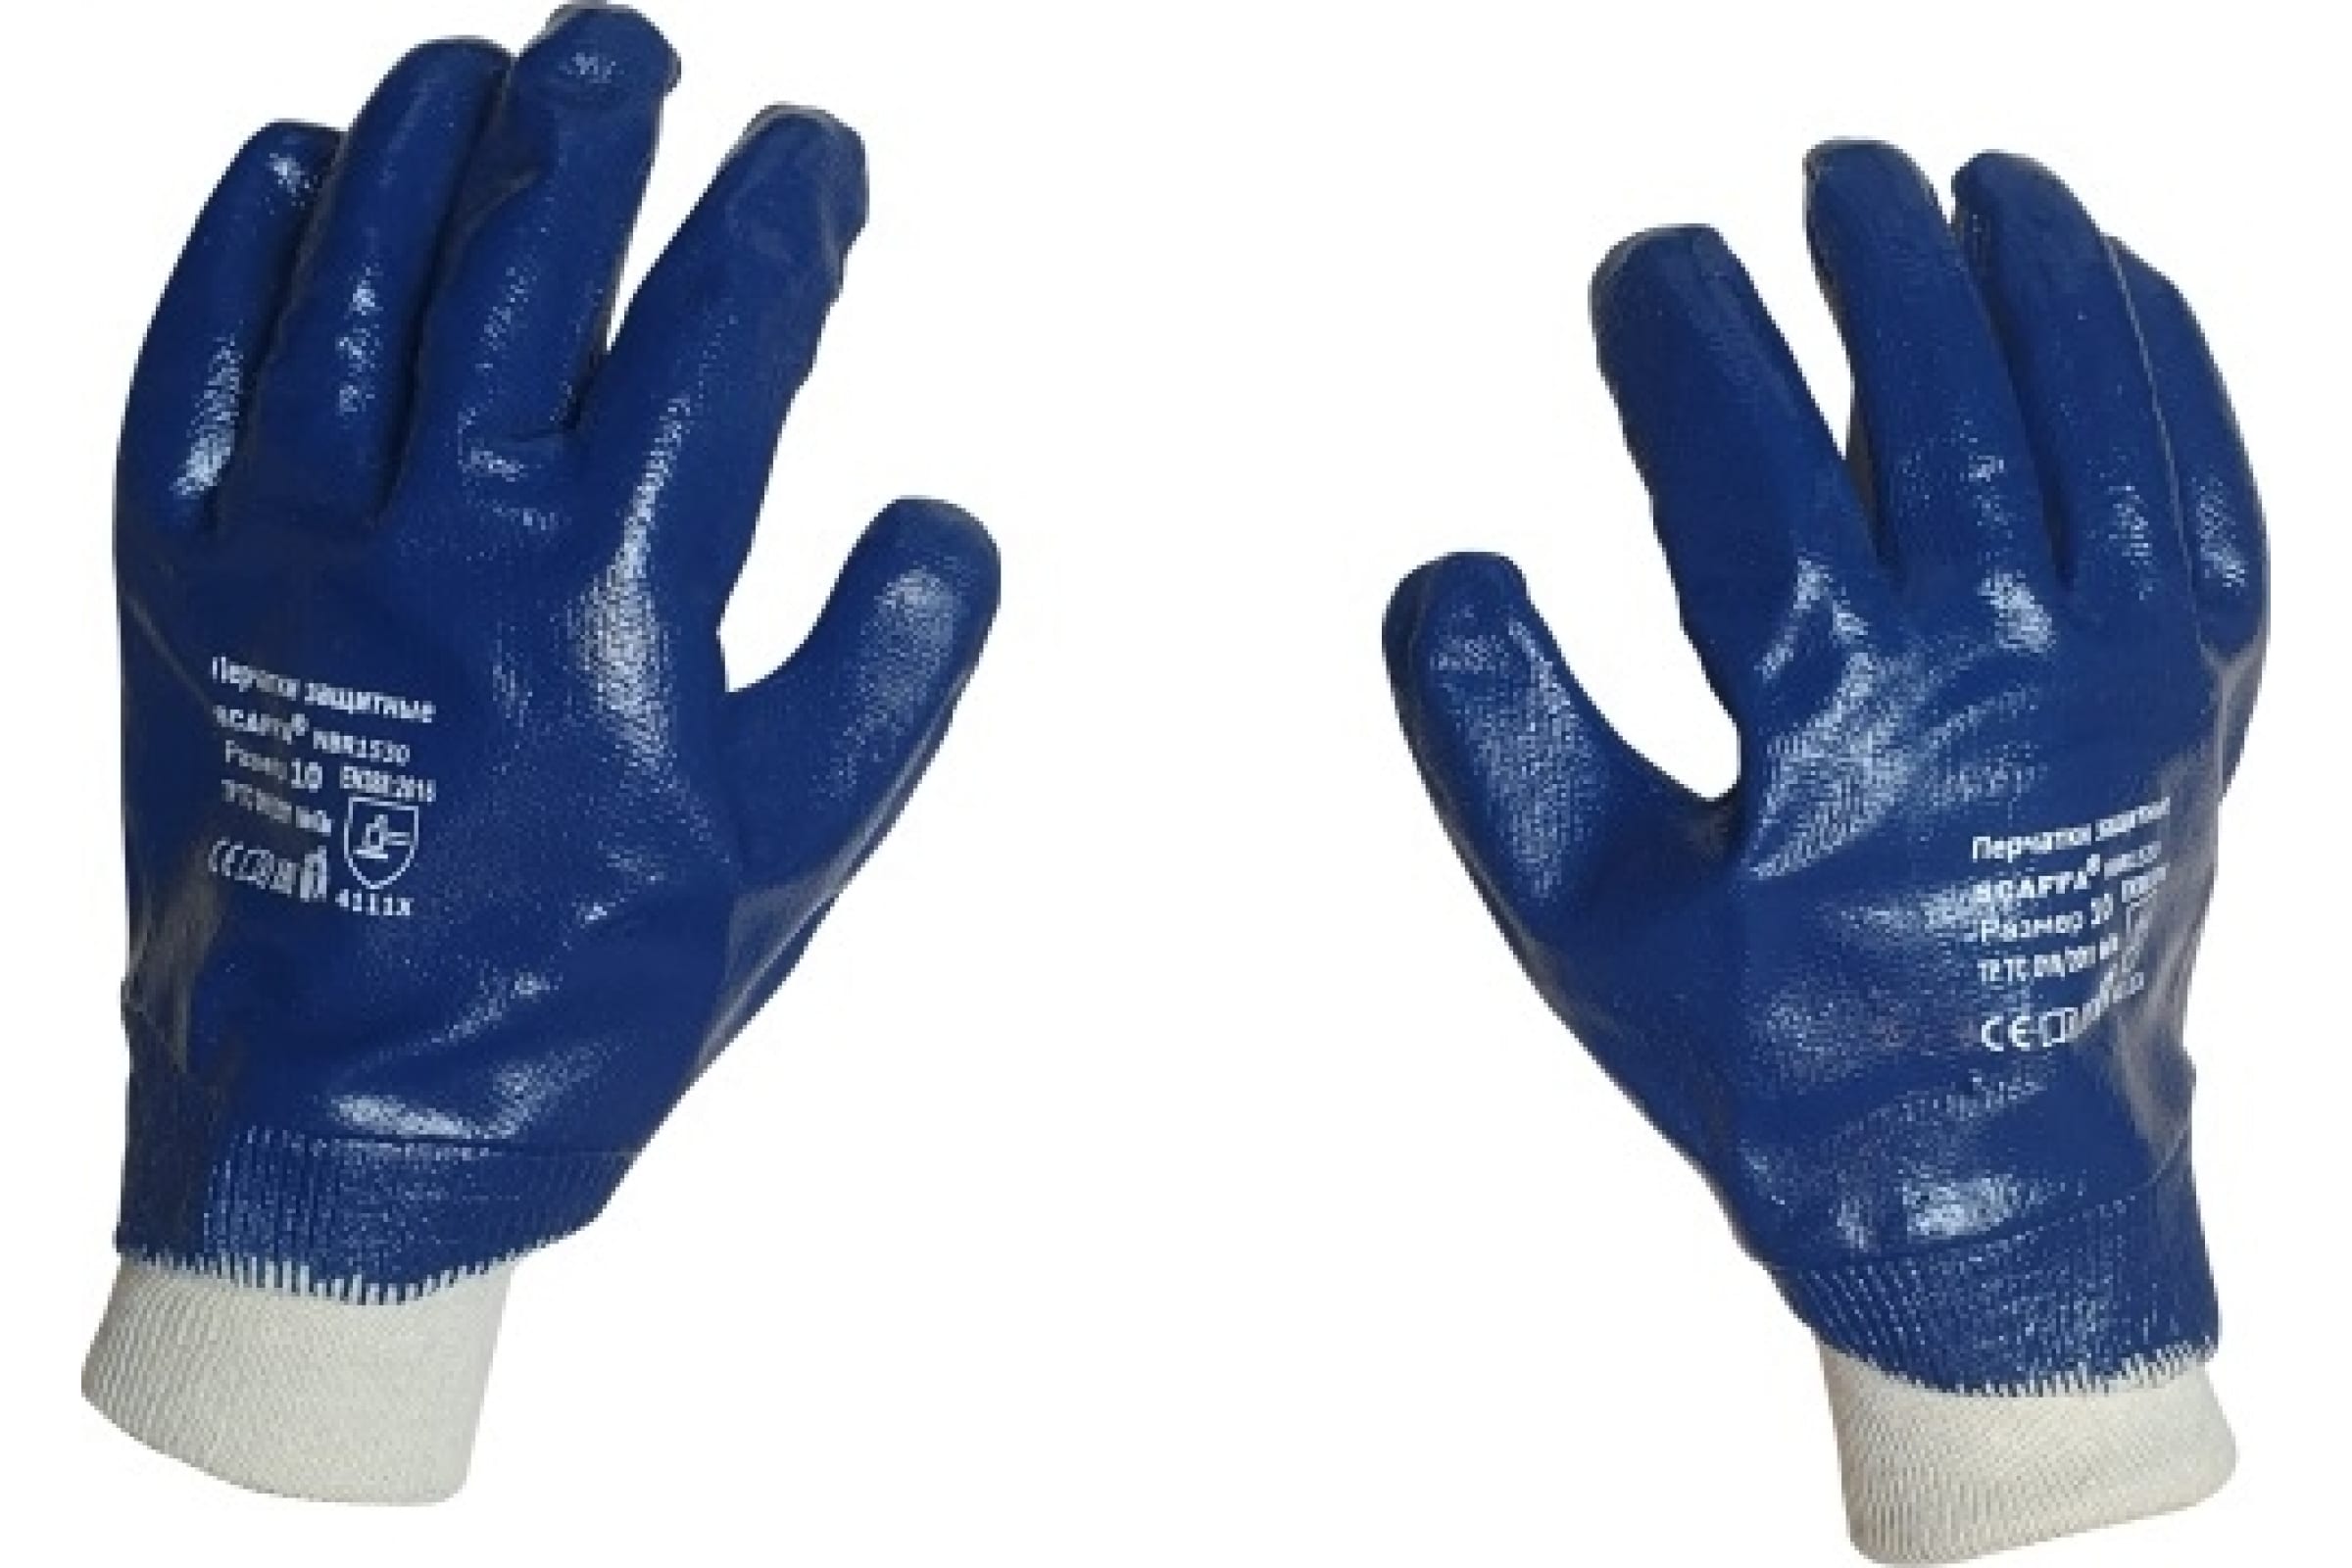 Scaffa перчатки с полным нитриловым обливом NBR1530 размер 10 00-00012457 перчатки с полным нитриловым обливом scaffa nbr4515 10